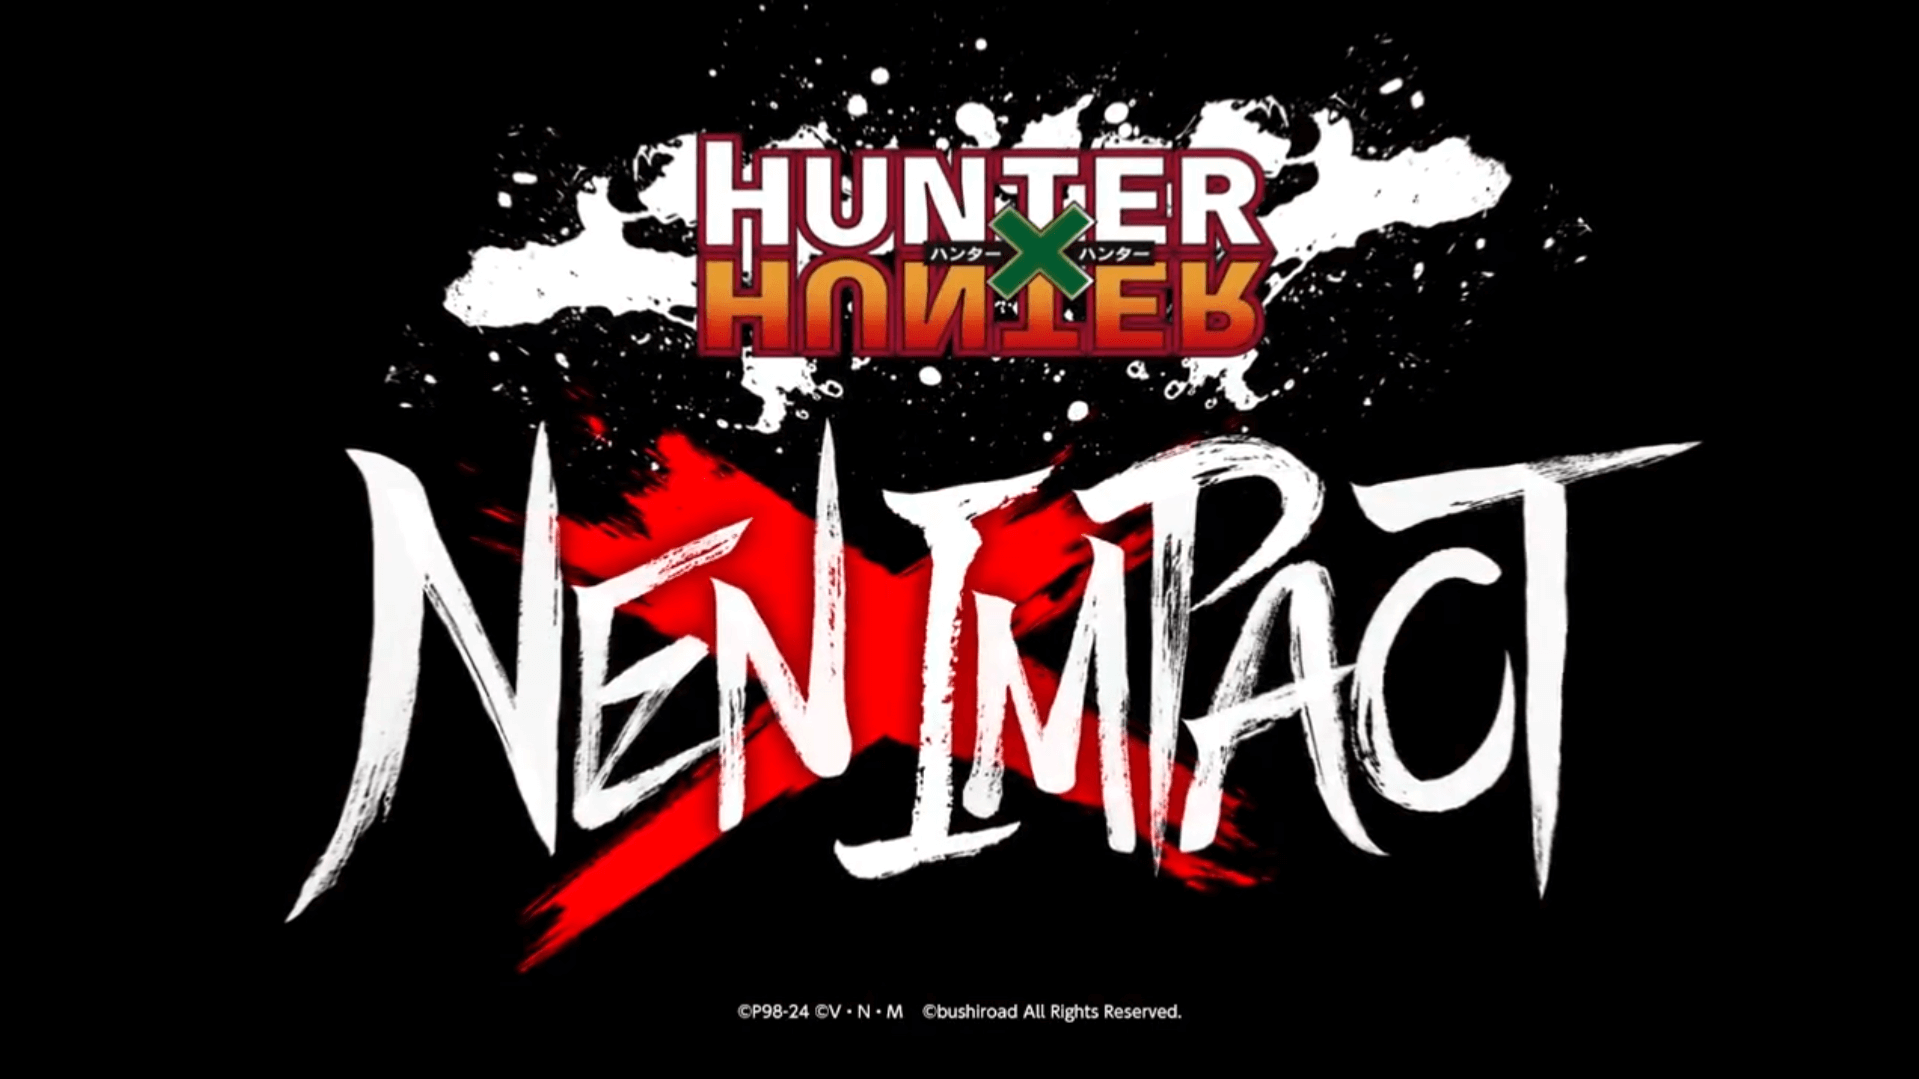 HUNTERxHUNTER NENxIMPACT Fighting Game Teaser And Development Update